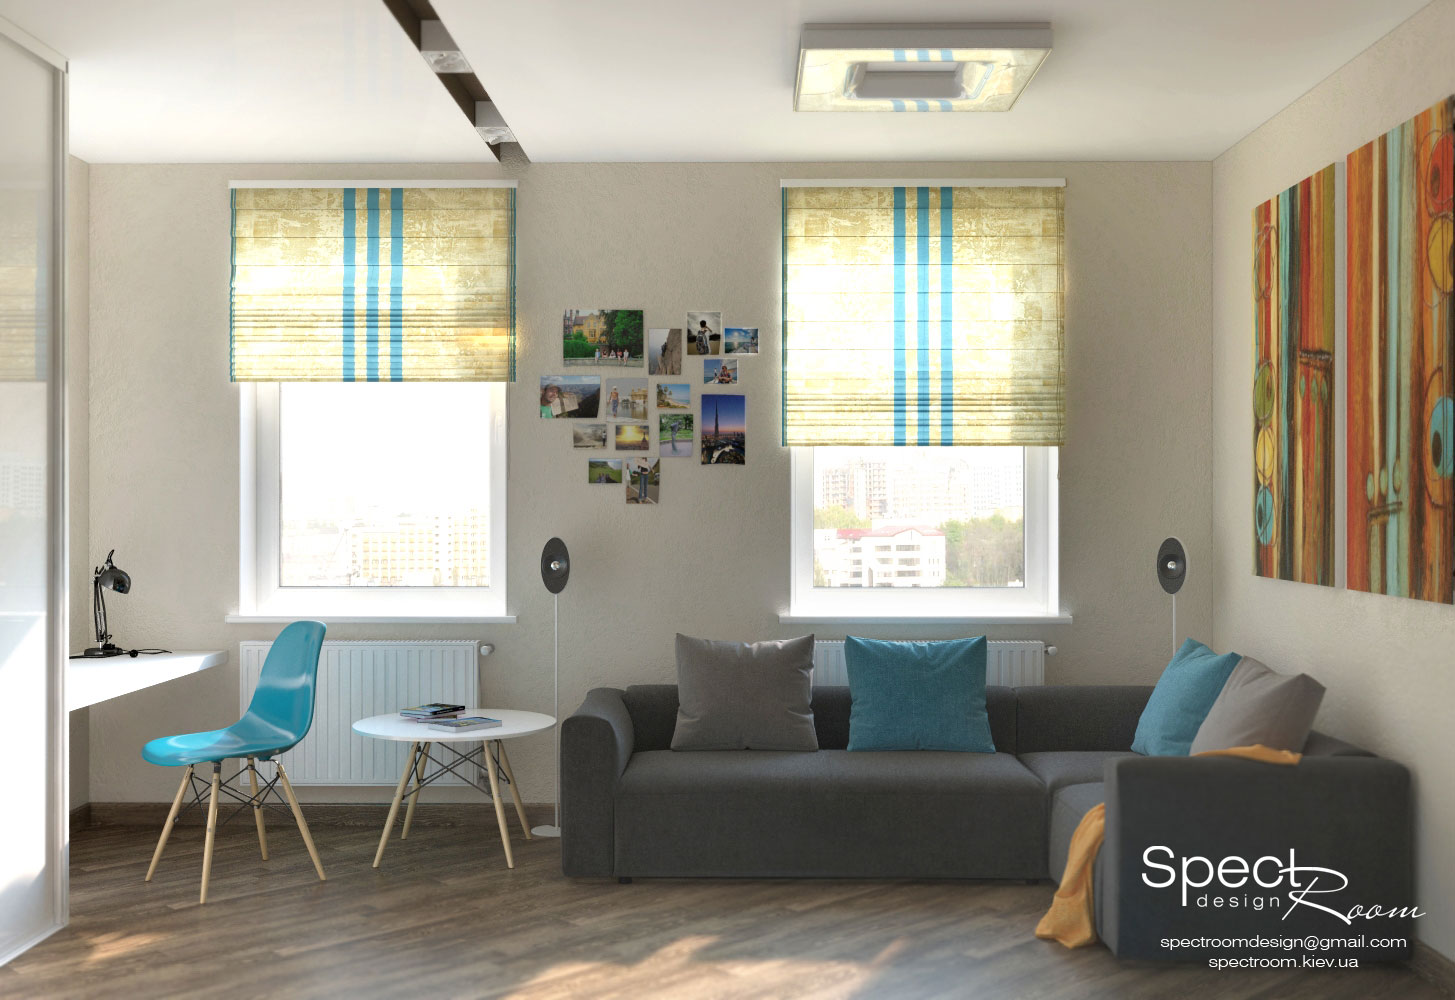 Молодіжний дизайн однокімнатної квартири  - Spectroom